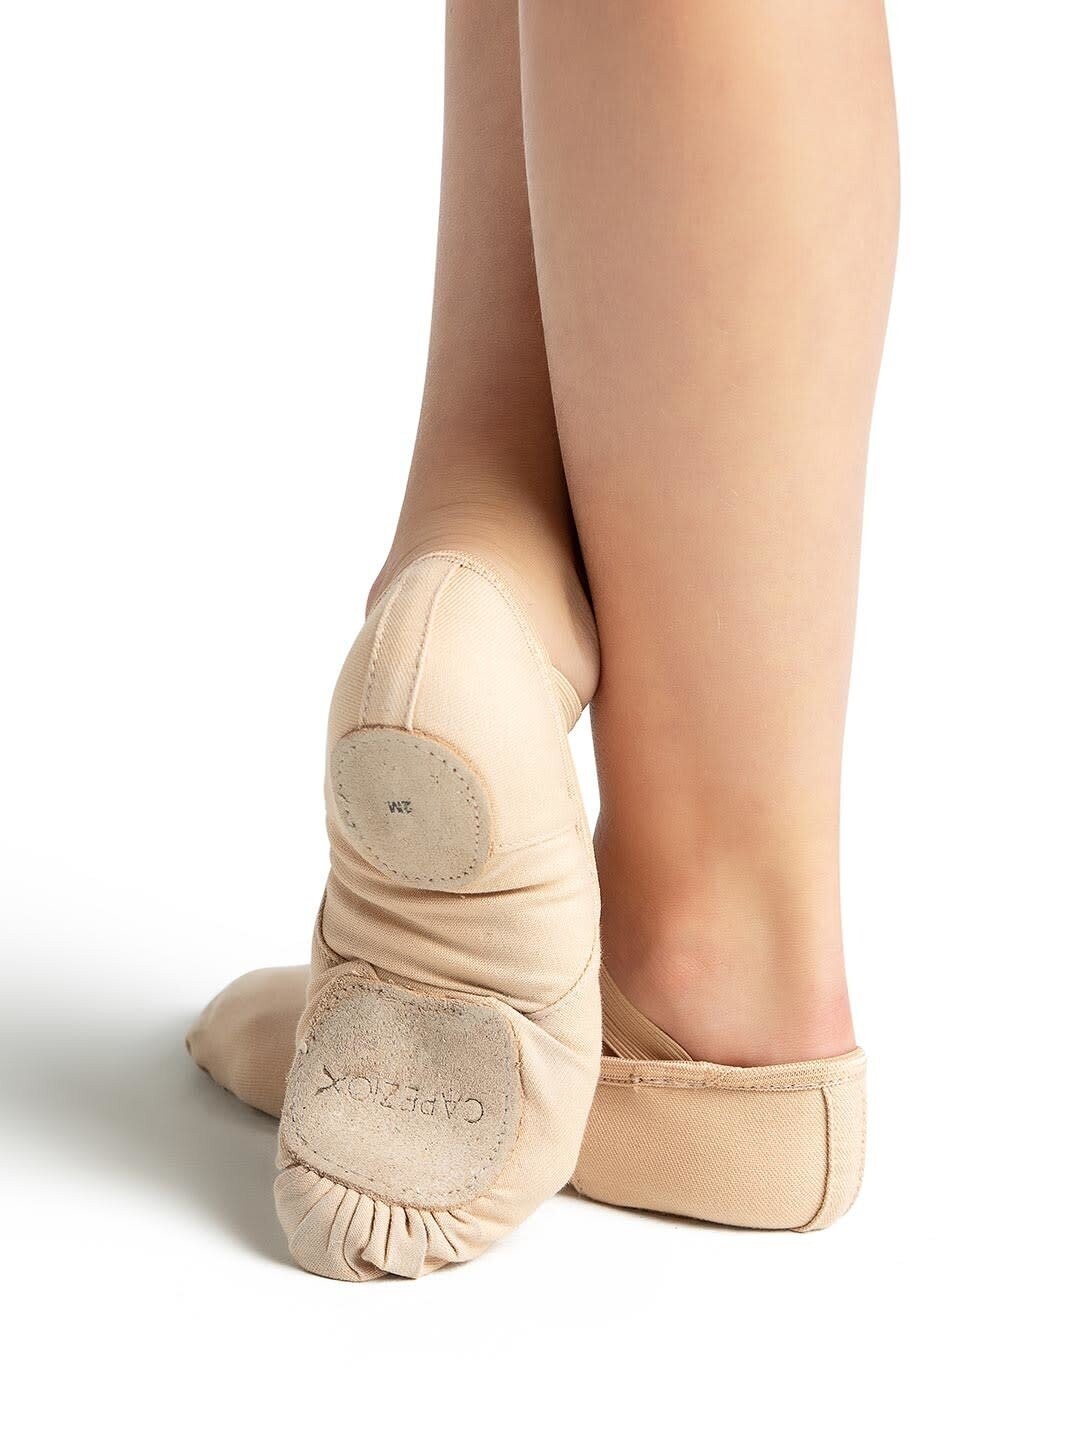 Capezio Hanami Stretch Canvas Ballet Shoe - Child